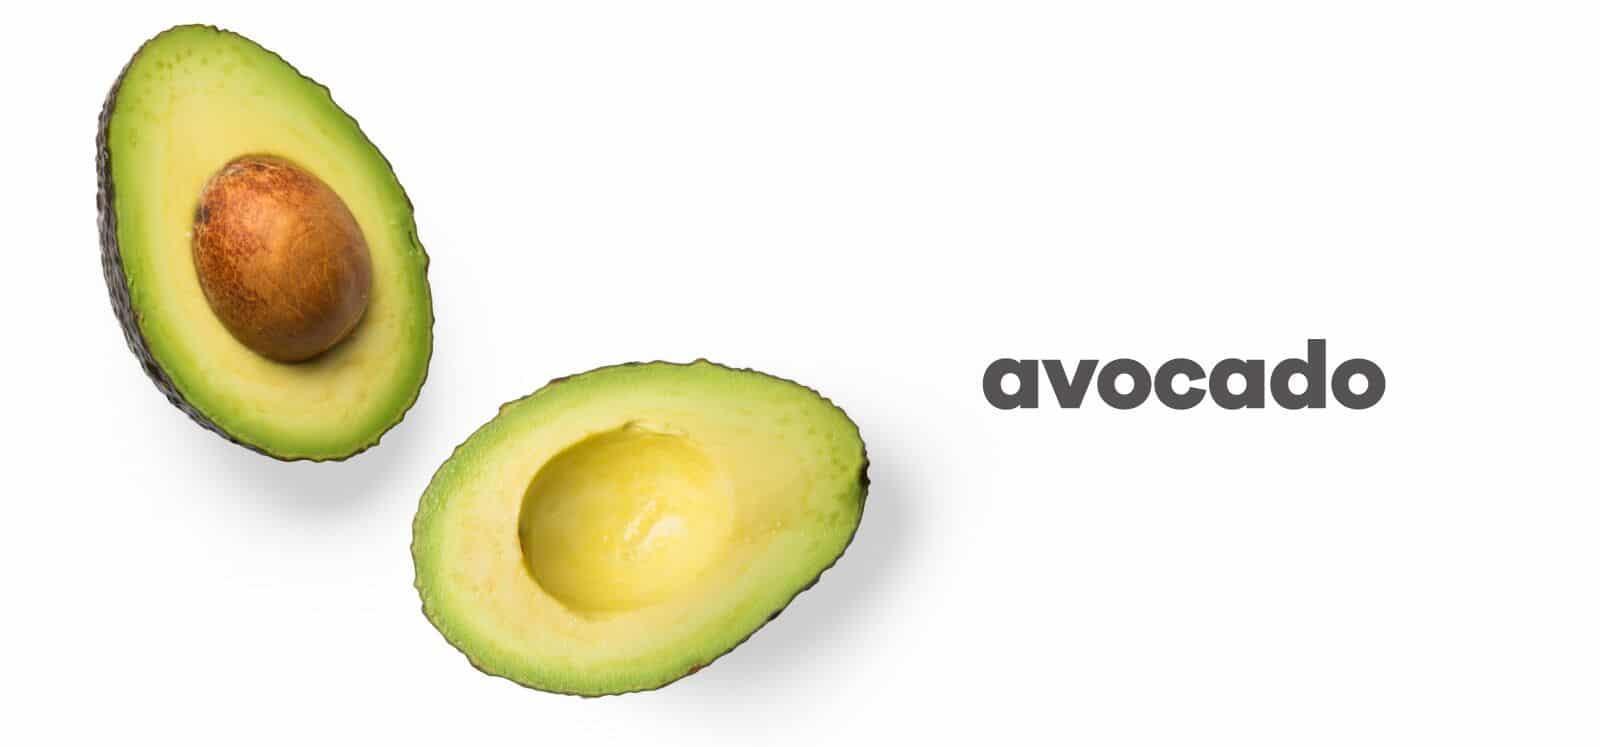 cut open avocado